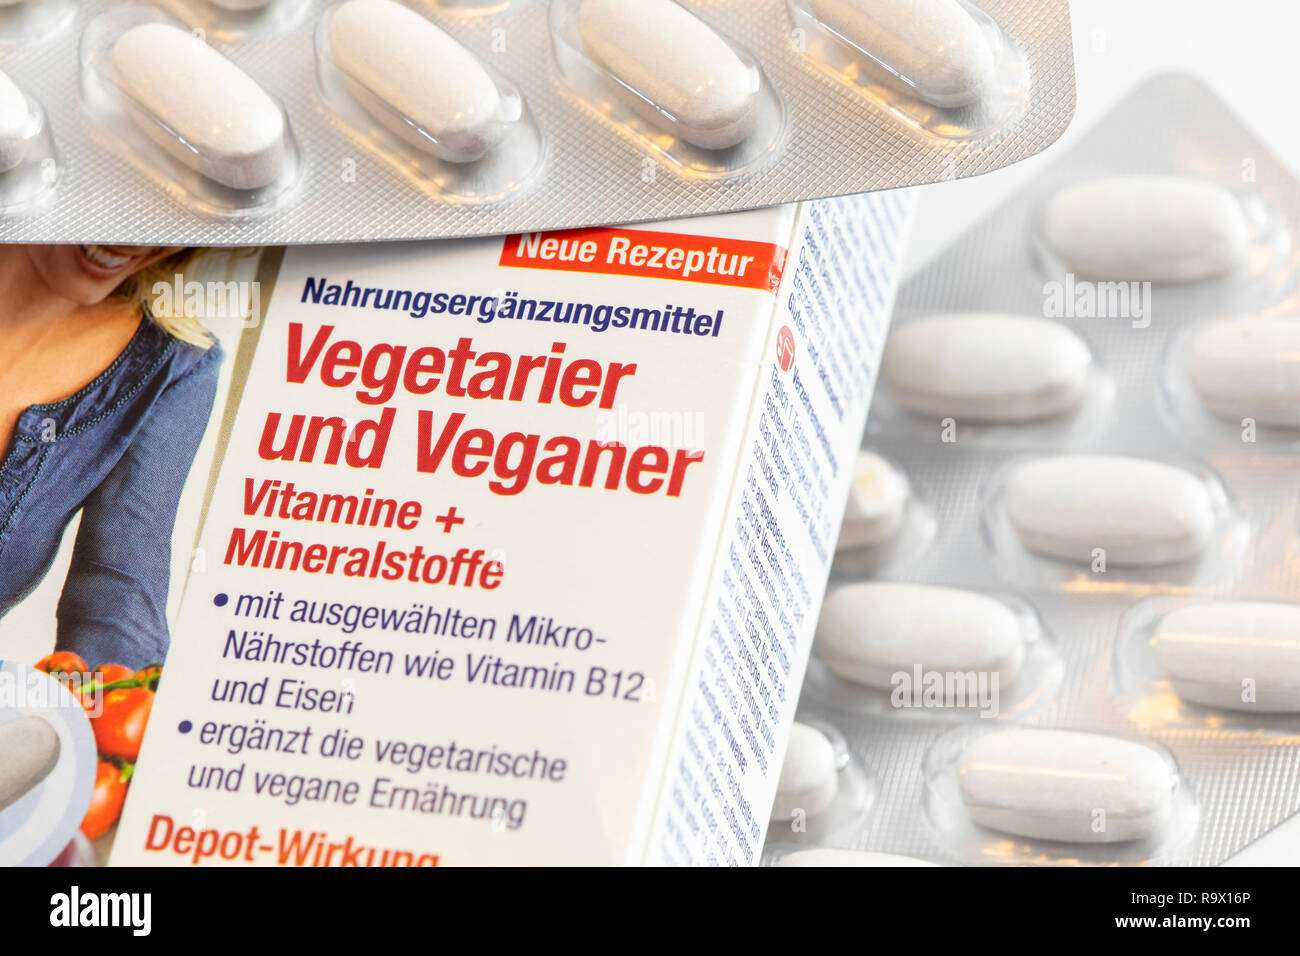 Vitamin tabletten Packs, die Vorbereitung soll die Vitamin und Mineralien Mangel zu ergänzen, indem es vegetarische oder vegane Ernährung, Stockfoto